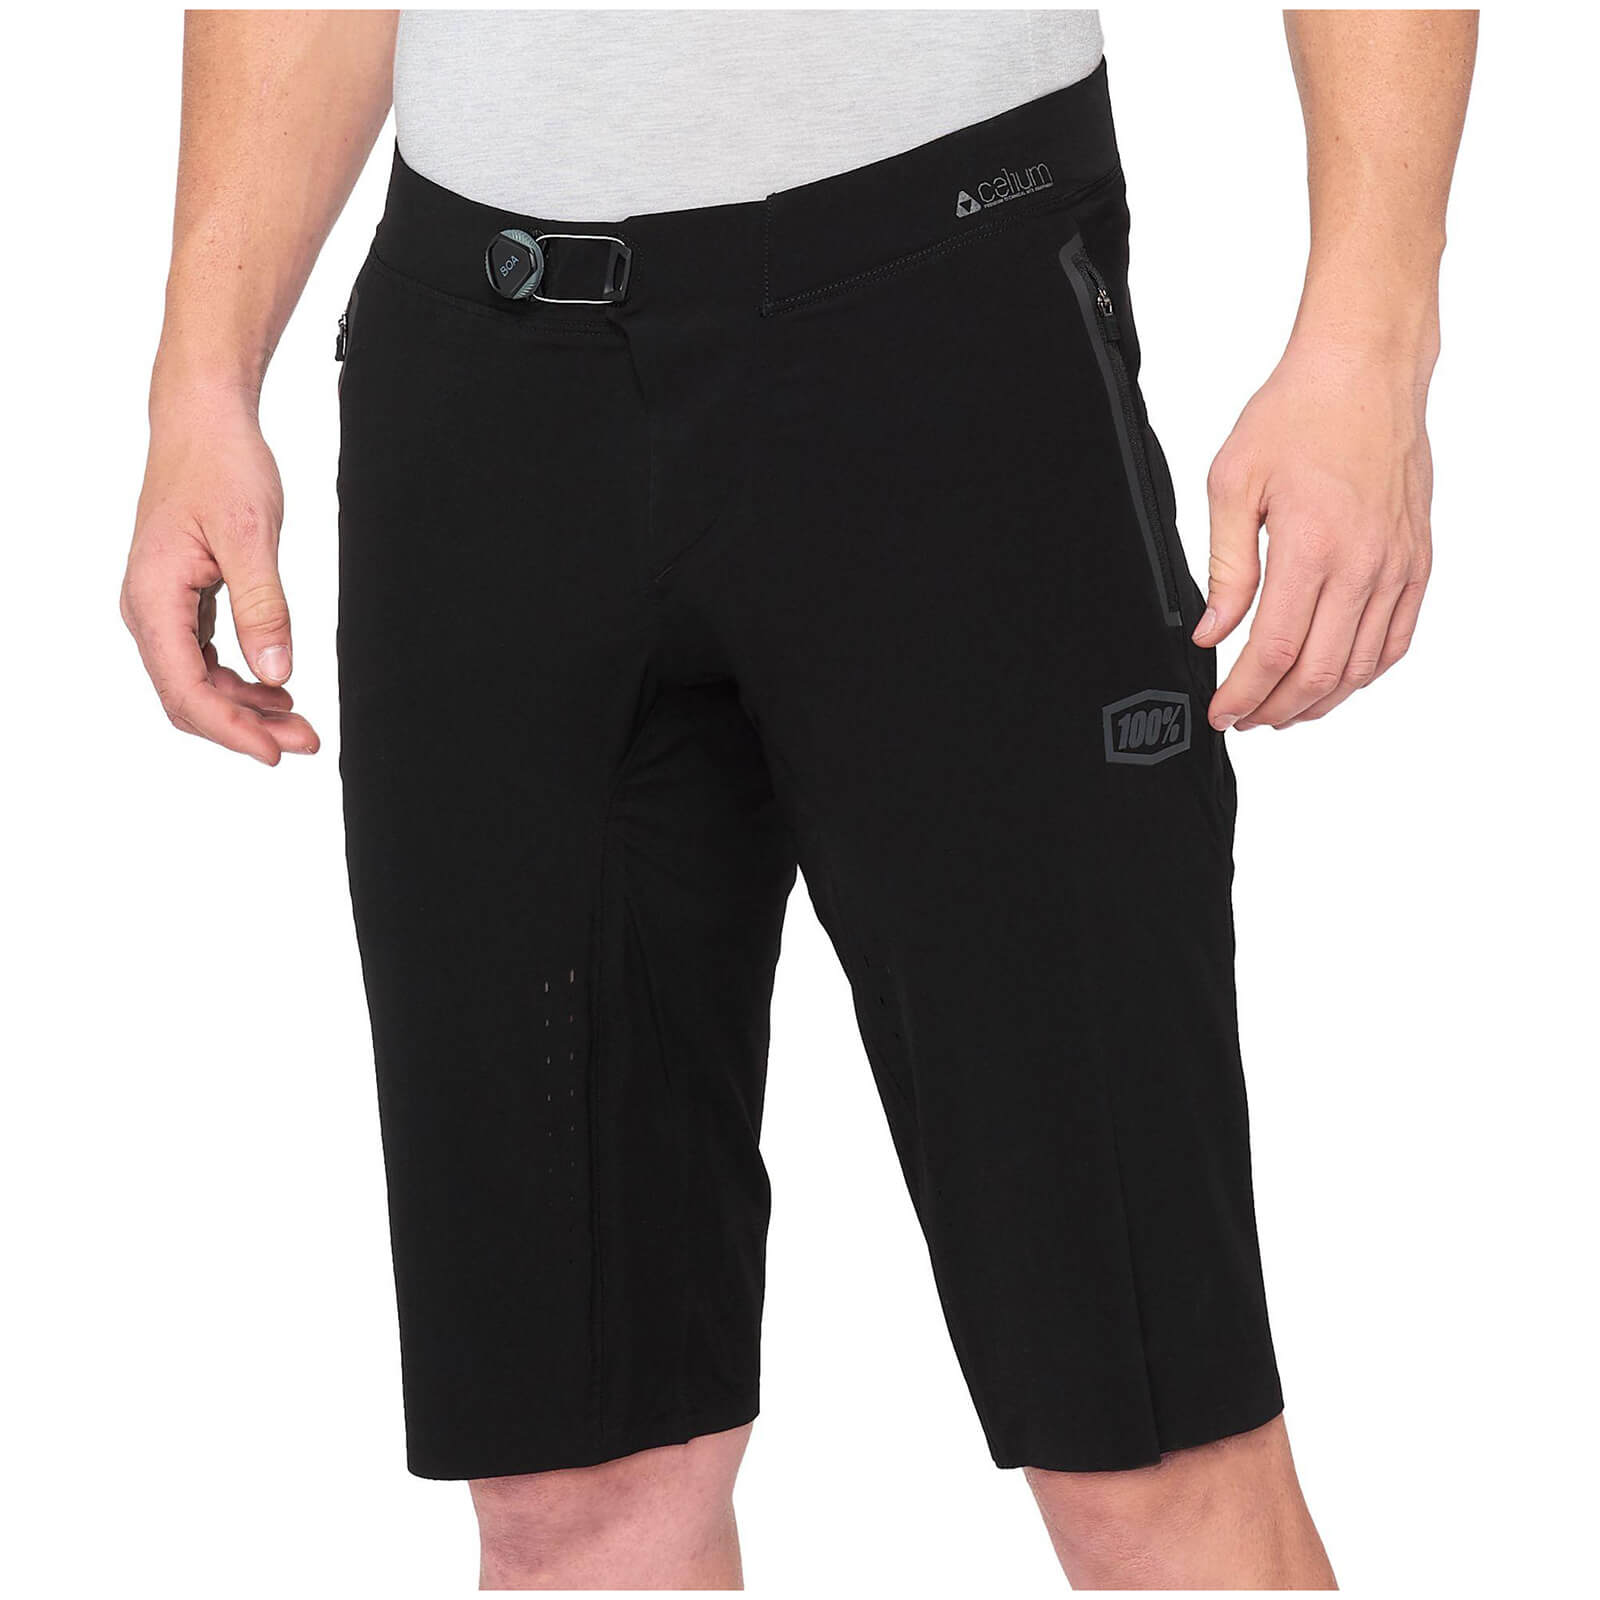 100% Celium MTB Shorts - 36 - Black